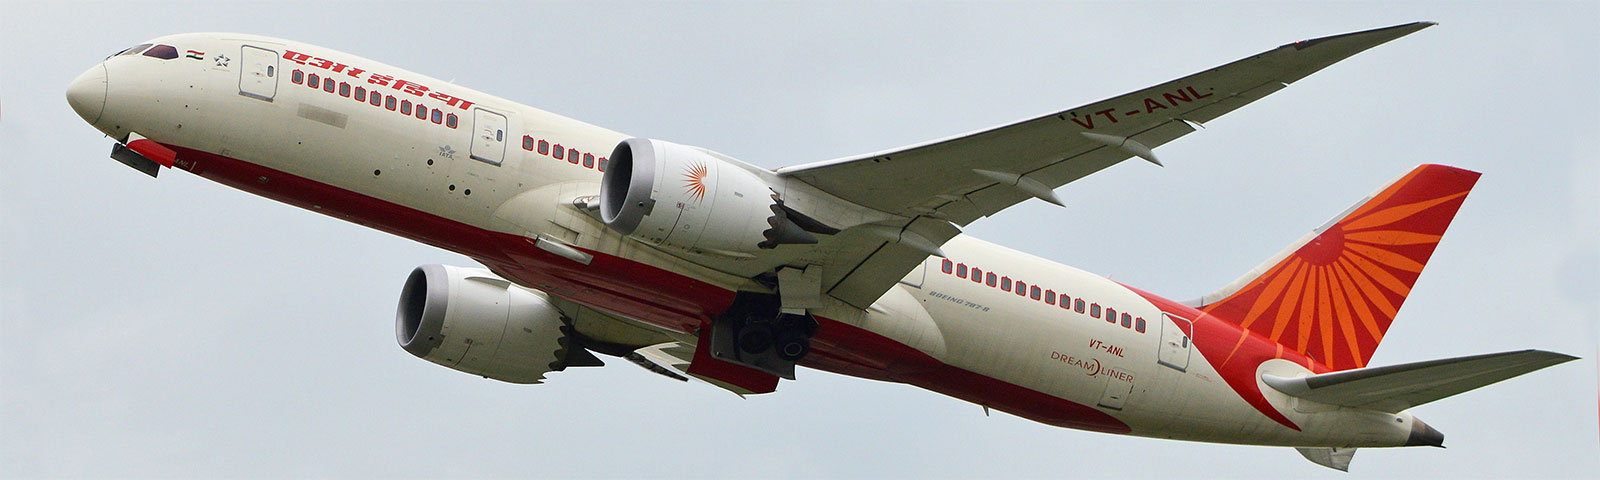 aeroplano in decollo della compagnia air india